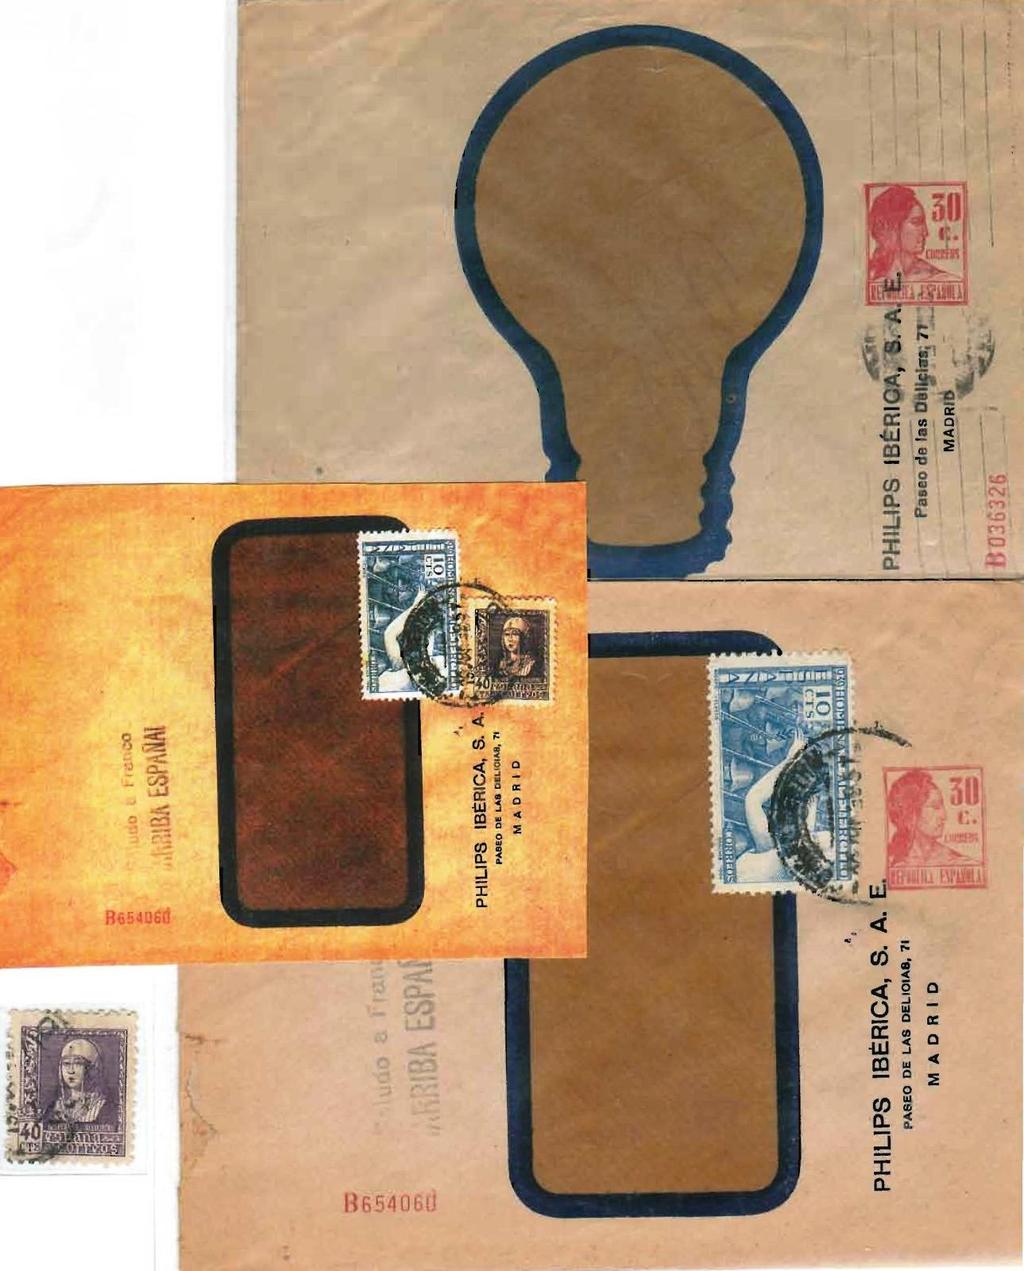 1932 Matrona. Cartas enteropostales interurbanas (30 cts.) privadas de Philips Ibérica, S.A.E. Ocho ejemplares conocidos con este tipo de numerador.